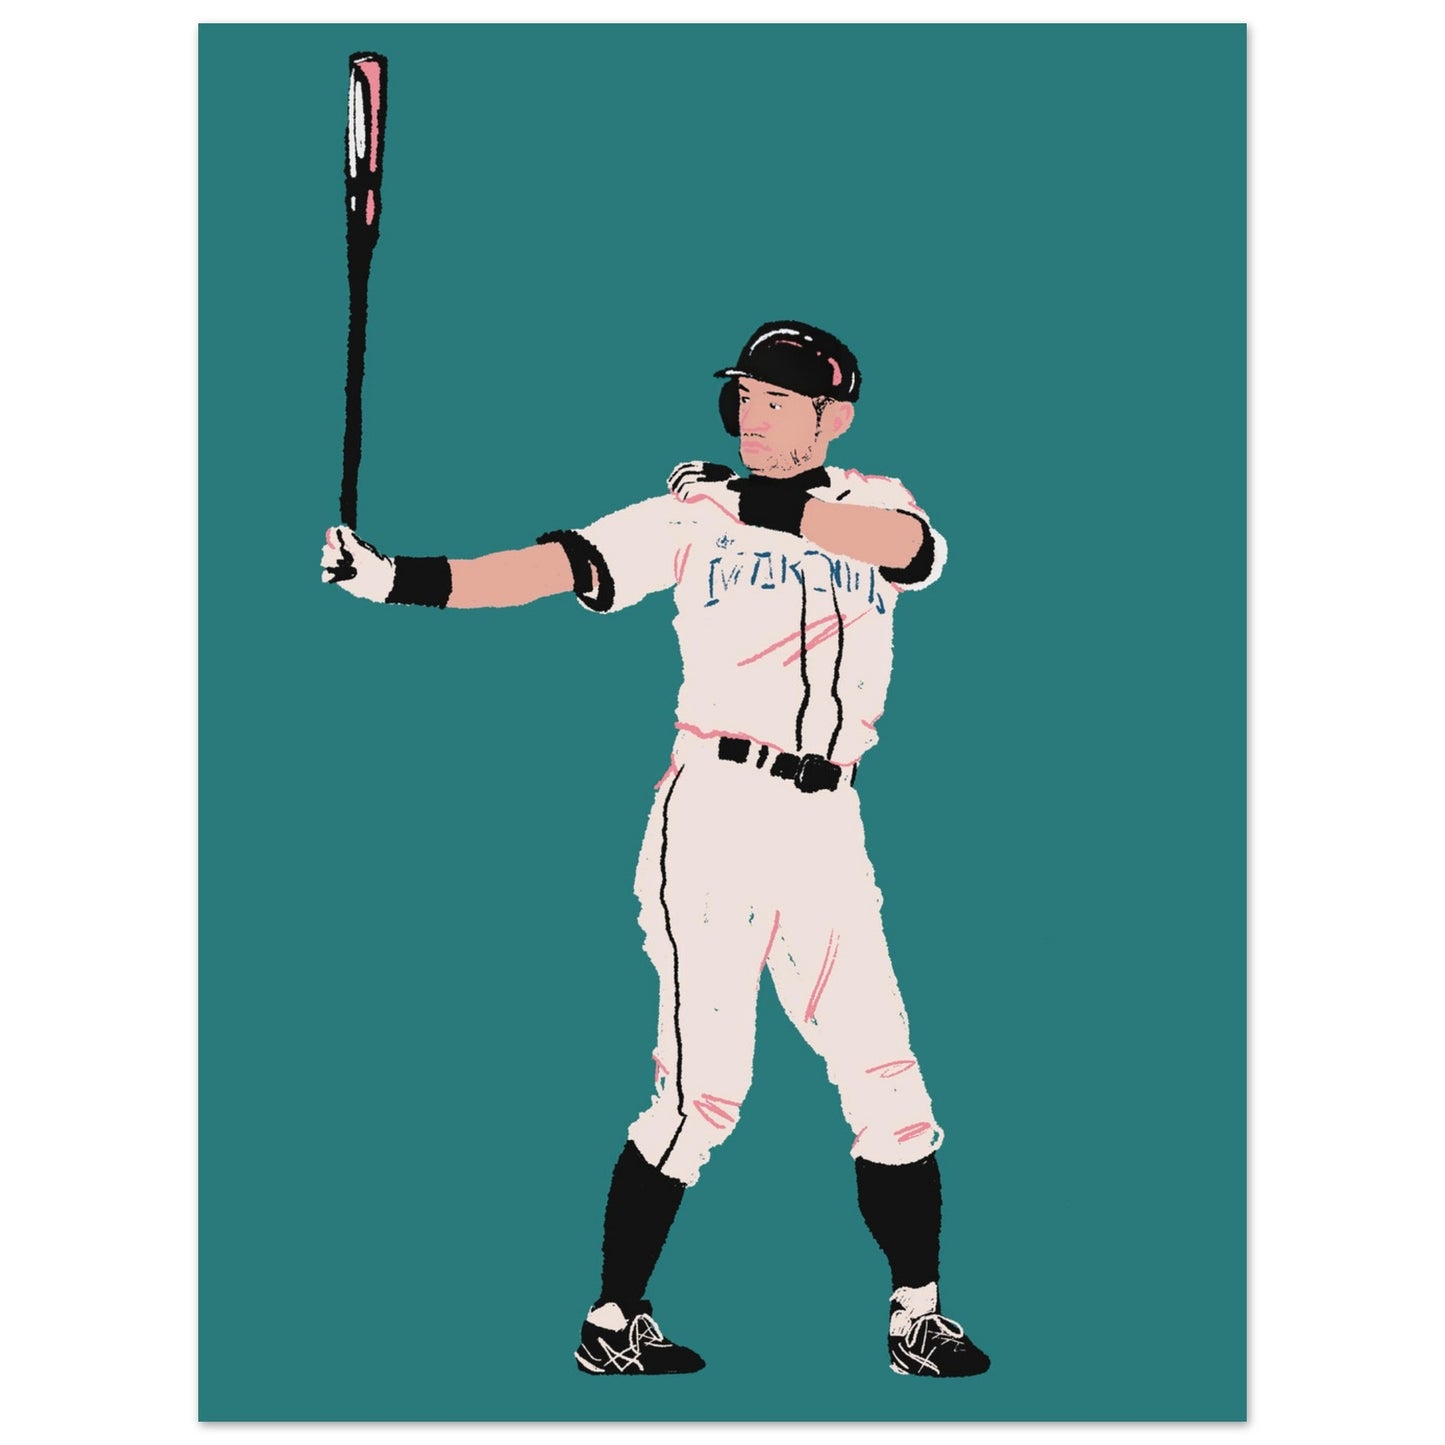 Preparing The Hit -  Graphic Print of Ichiro Suzuki Baseball